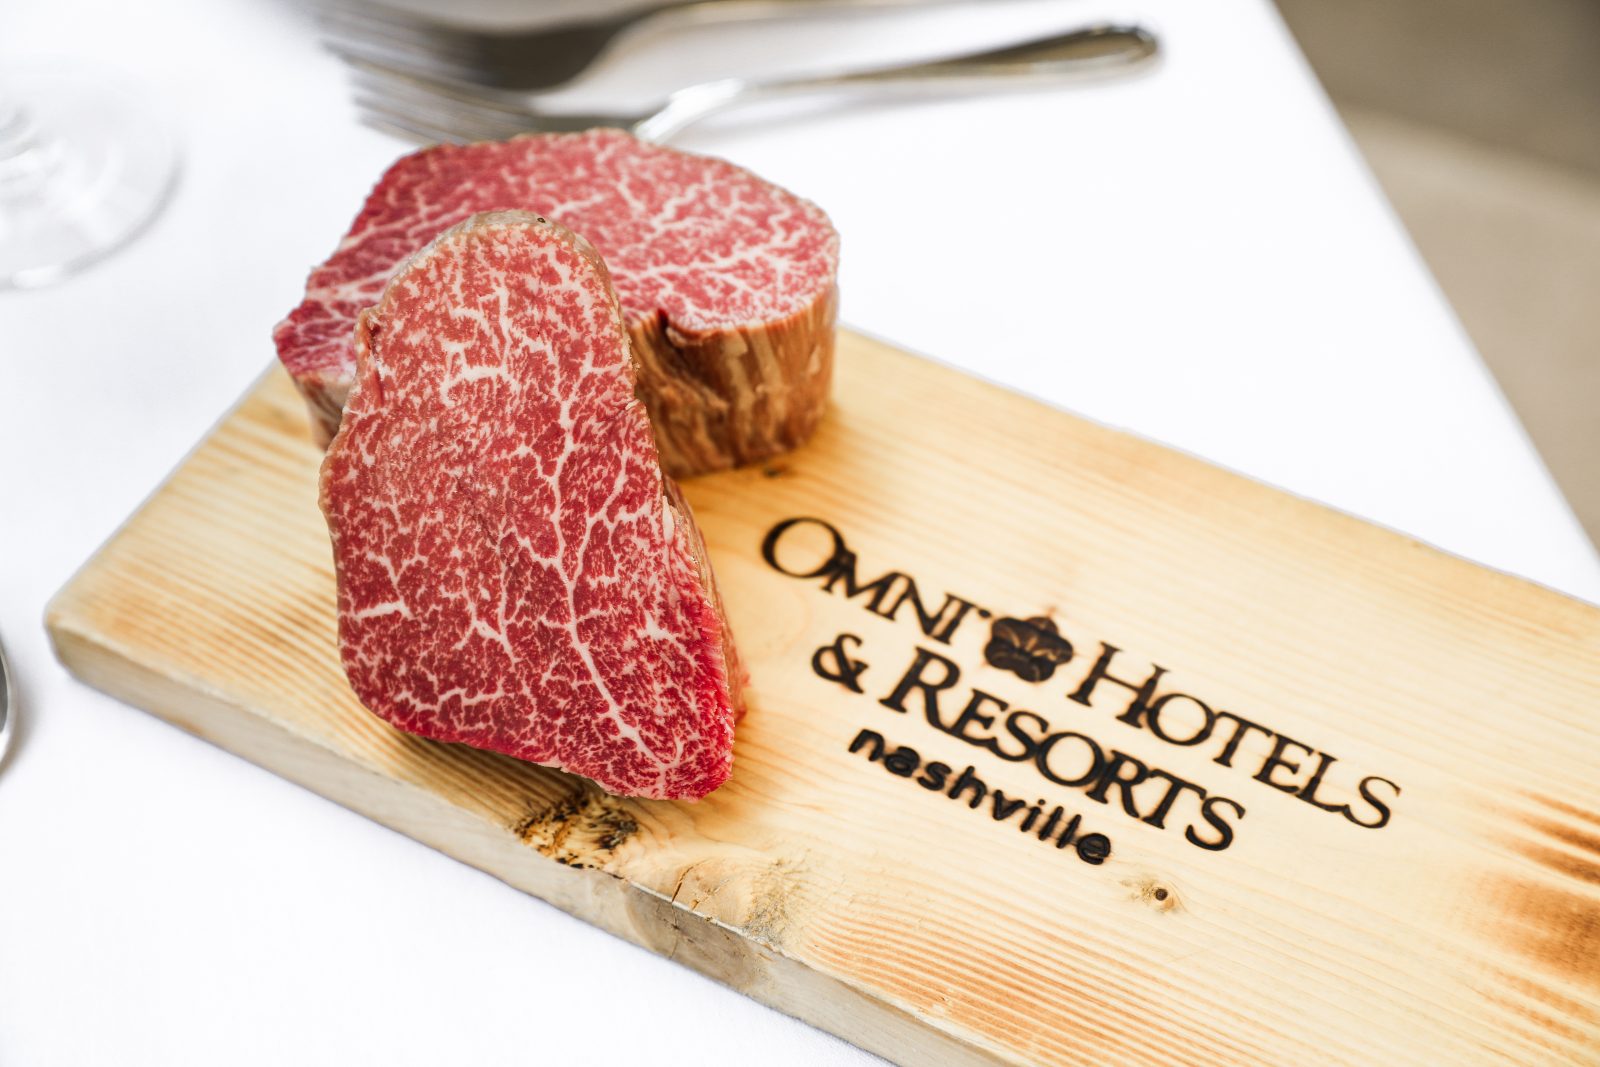 Waygu beef served by the Omni Hotel's food staff in Nashville TN